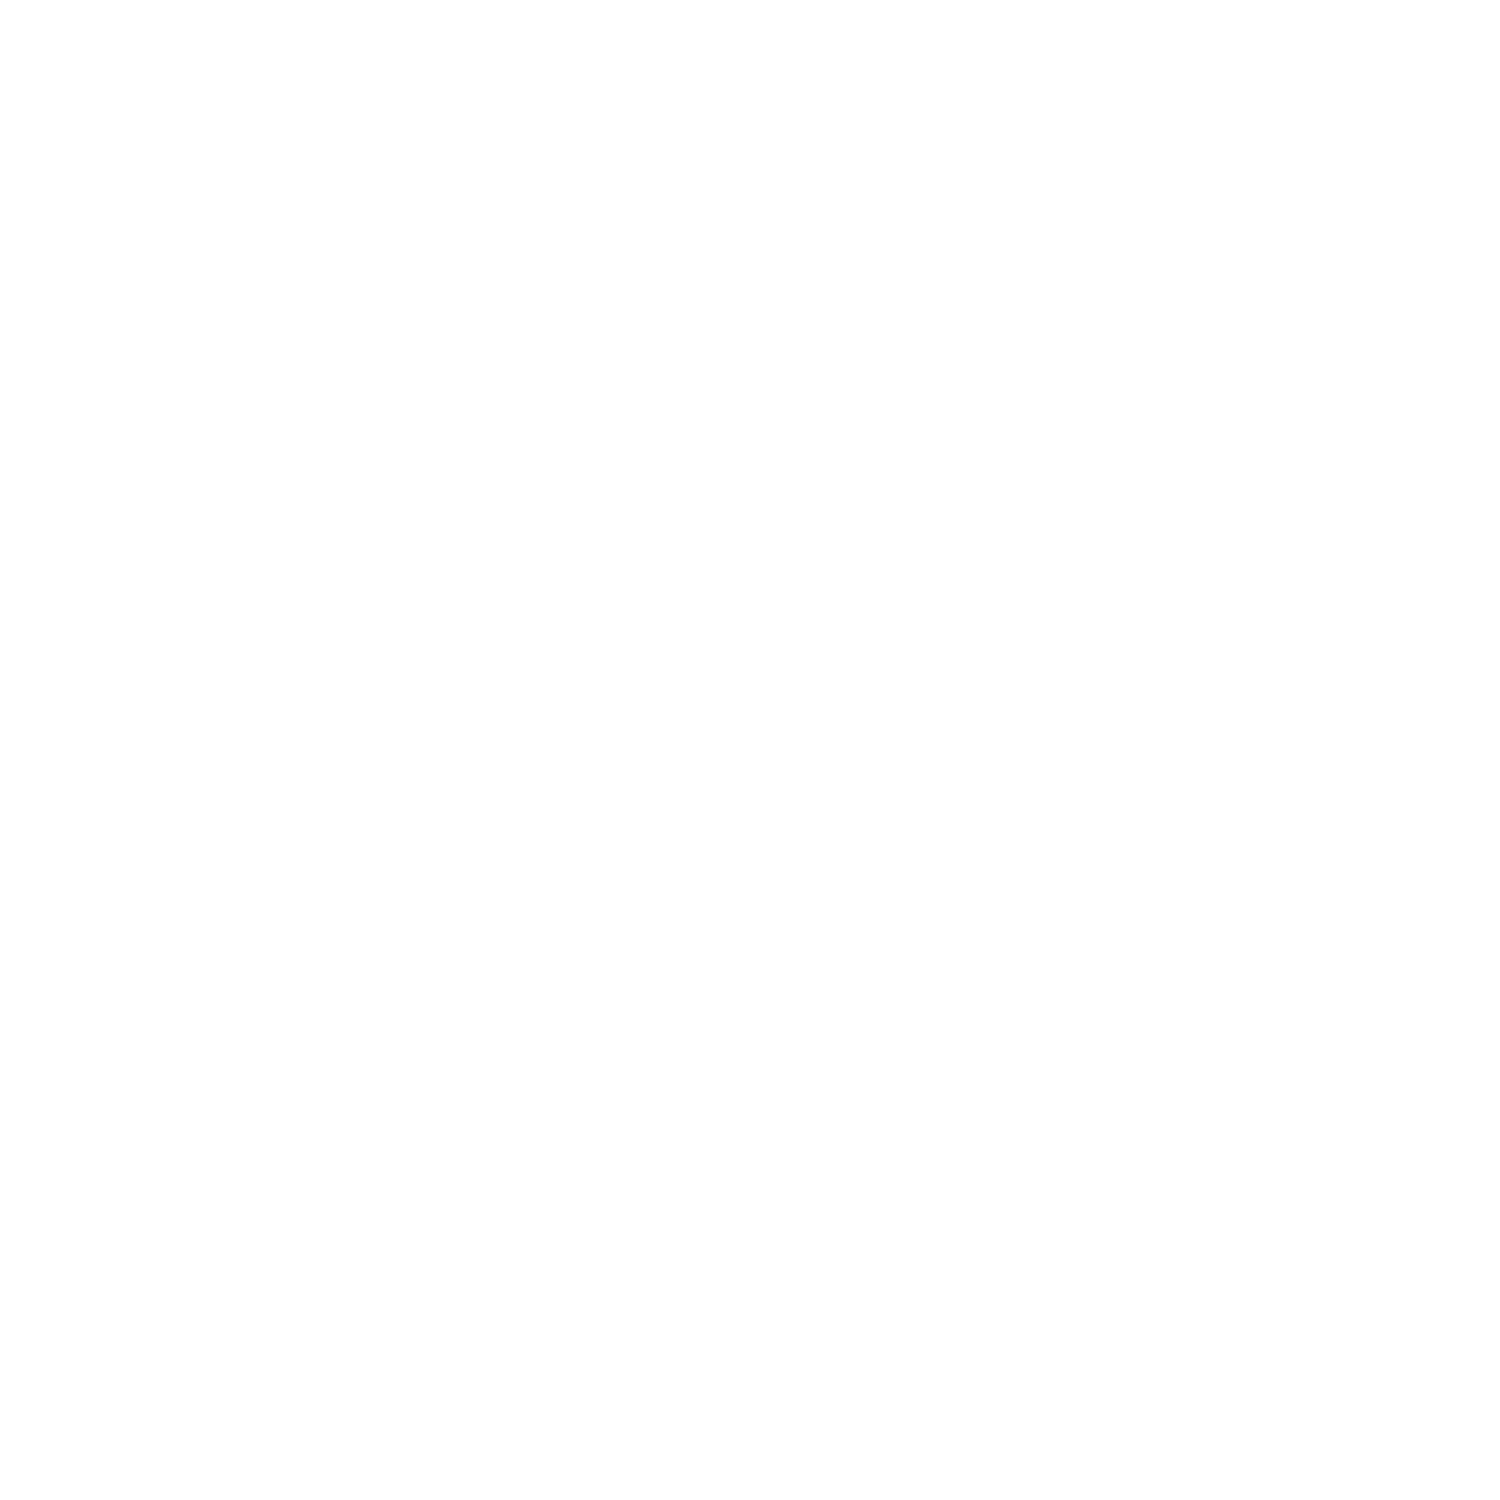 Stephanie Henne Realtor 